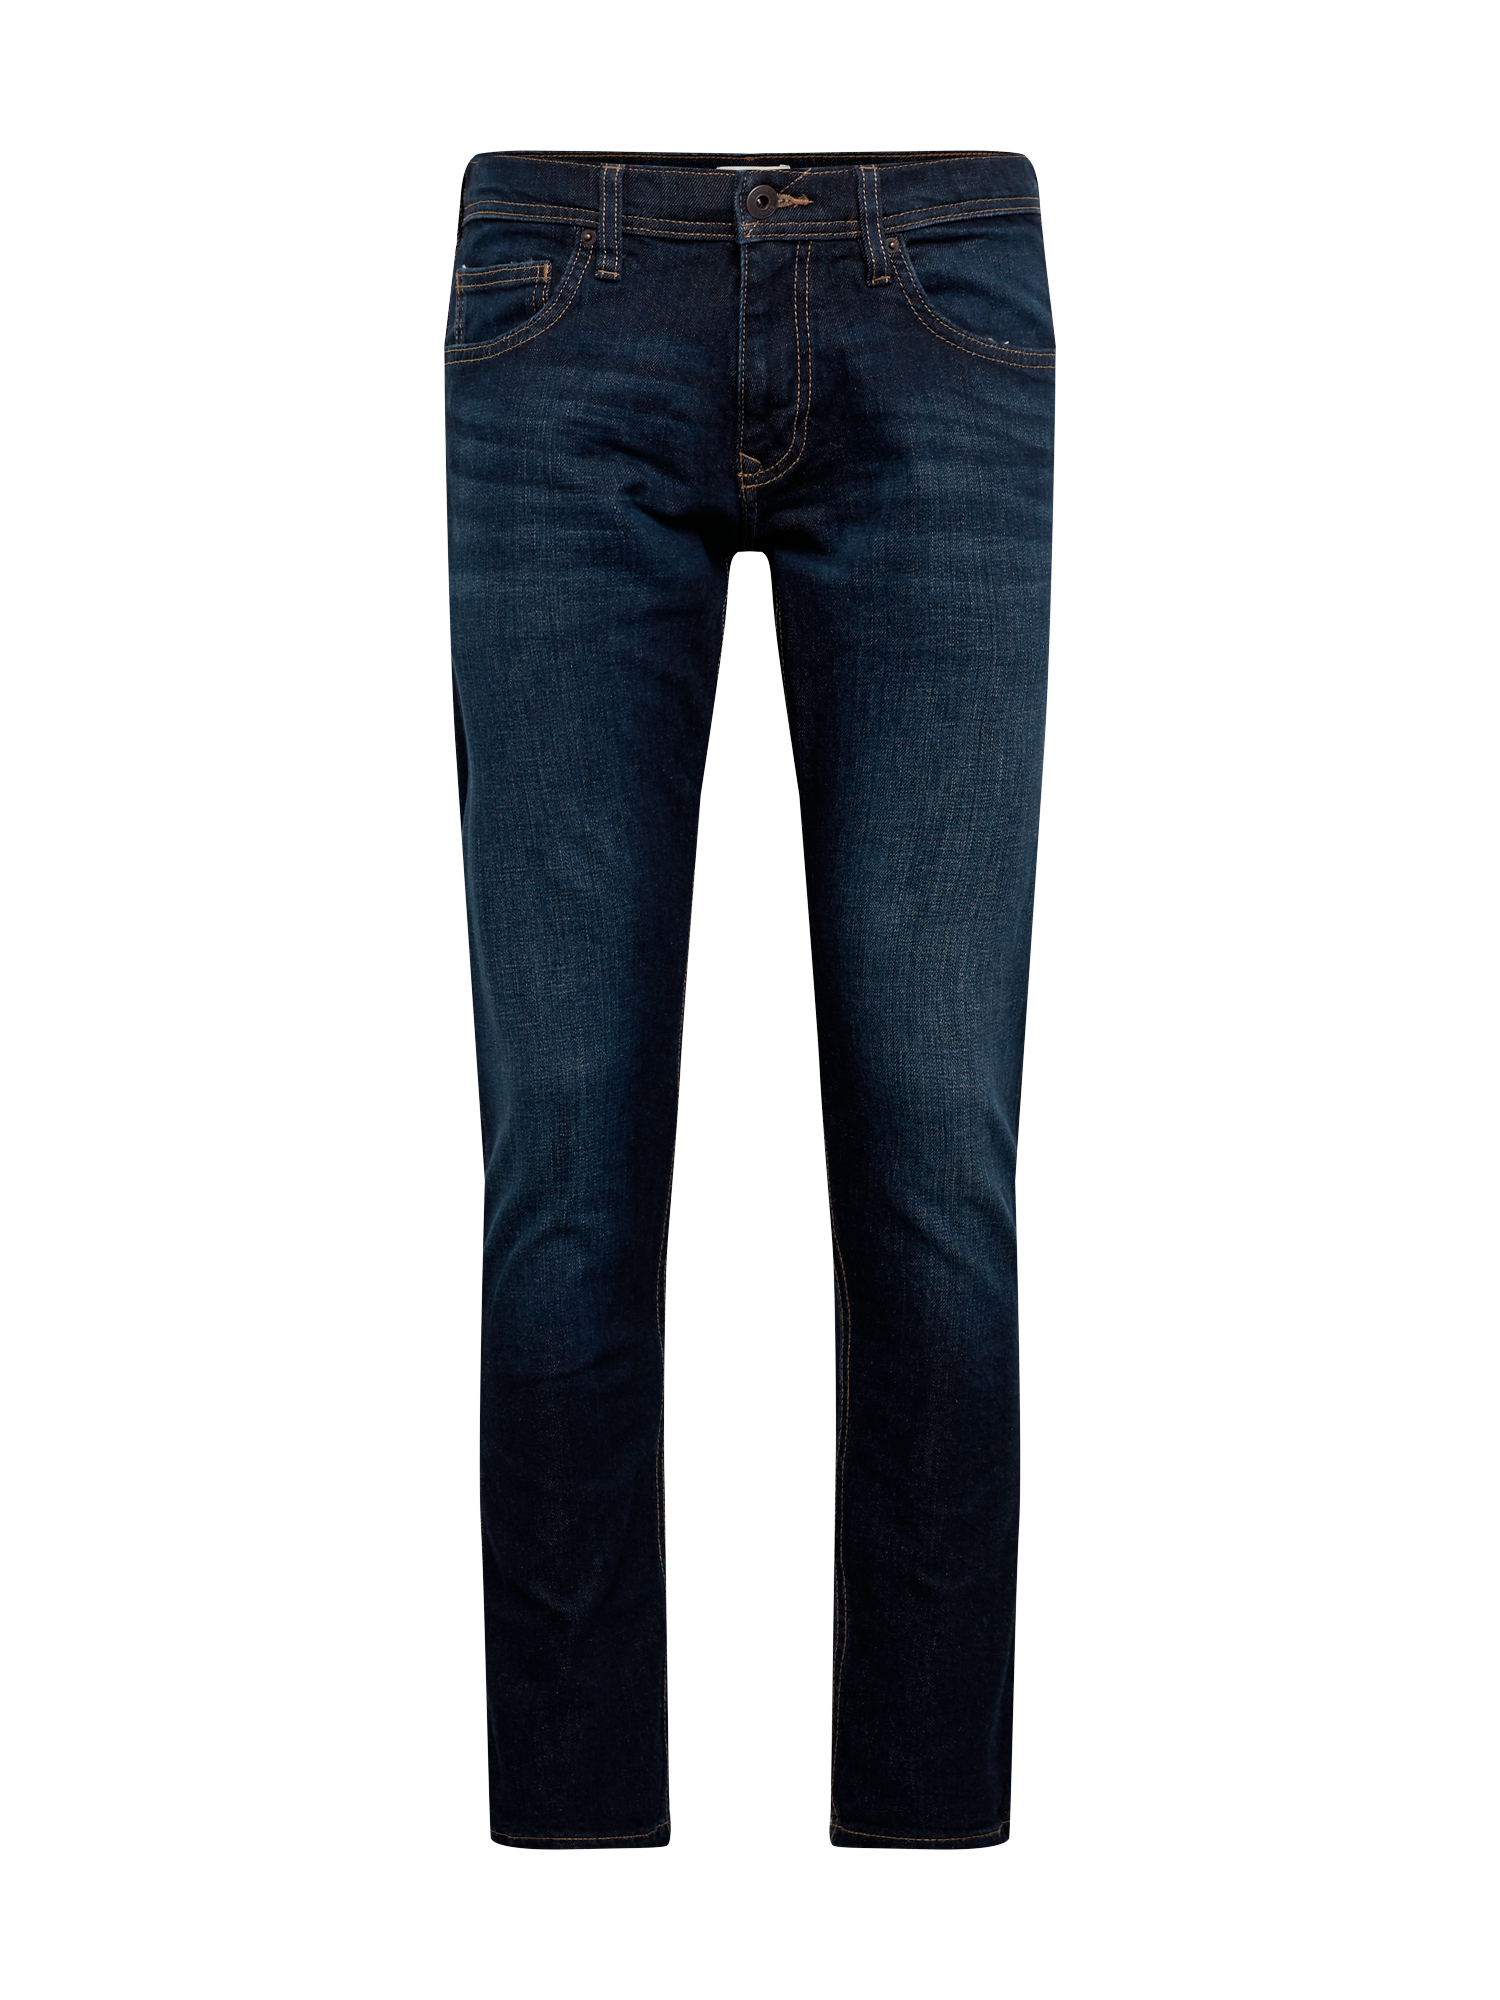 ESPRIT Jeans in Dunkelblau 